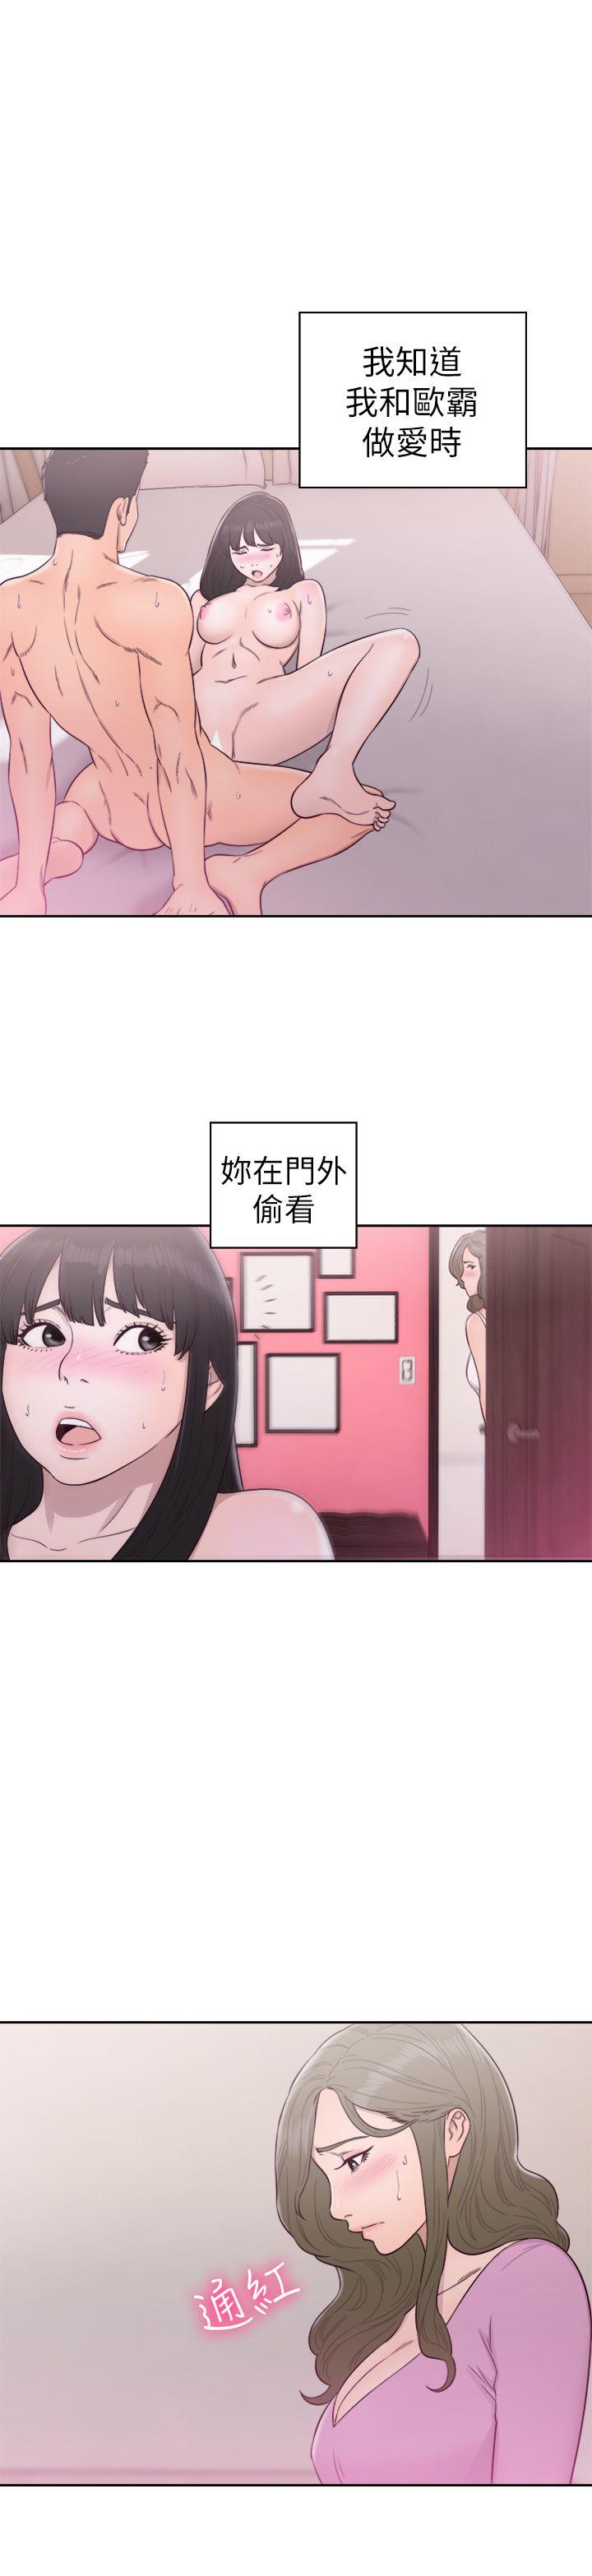 韩国污漫画 解禁:初始的快感 第50话 31